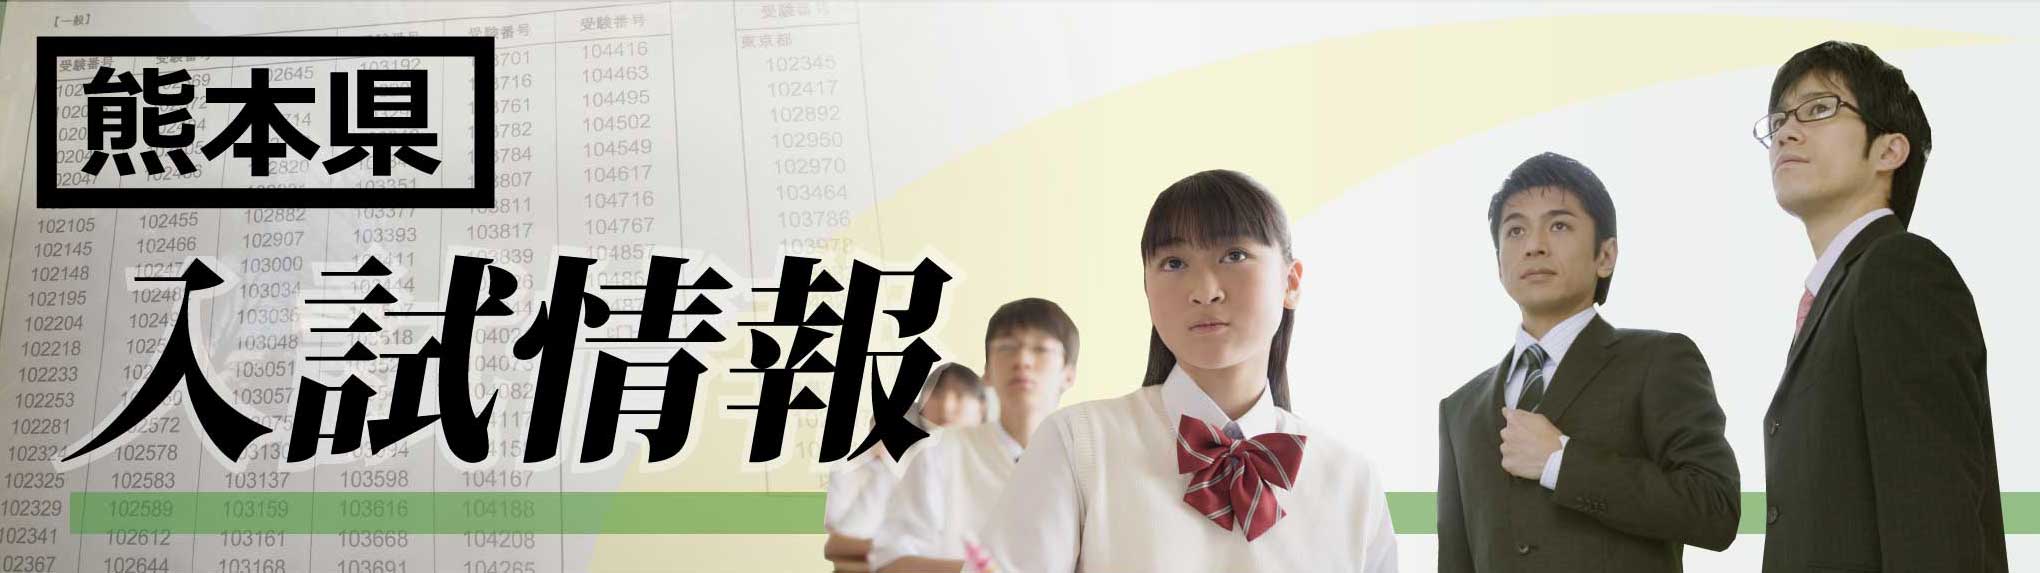 熊本県 高校入試21 ボーダーライン 偏差値 家庭教師のagent